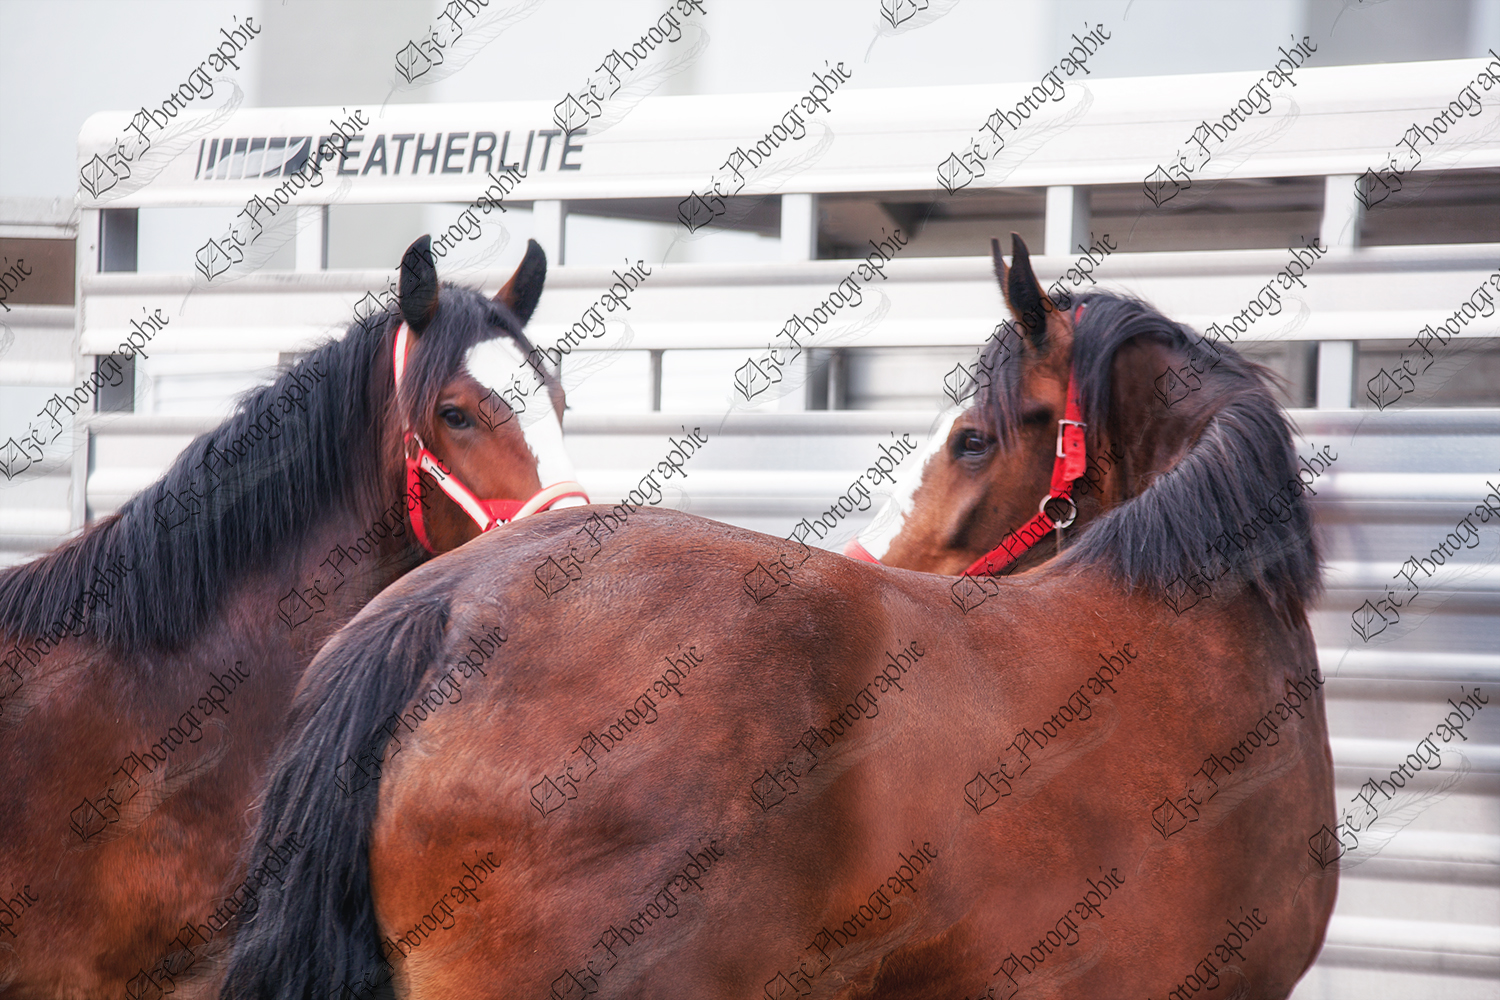 elze_photo_6589_chevaux_attaches_shire_horses_show_trailer